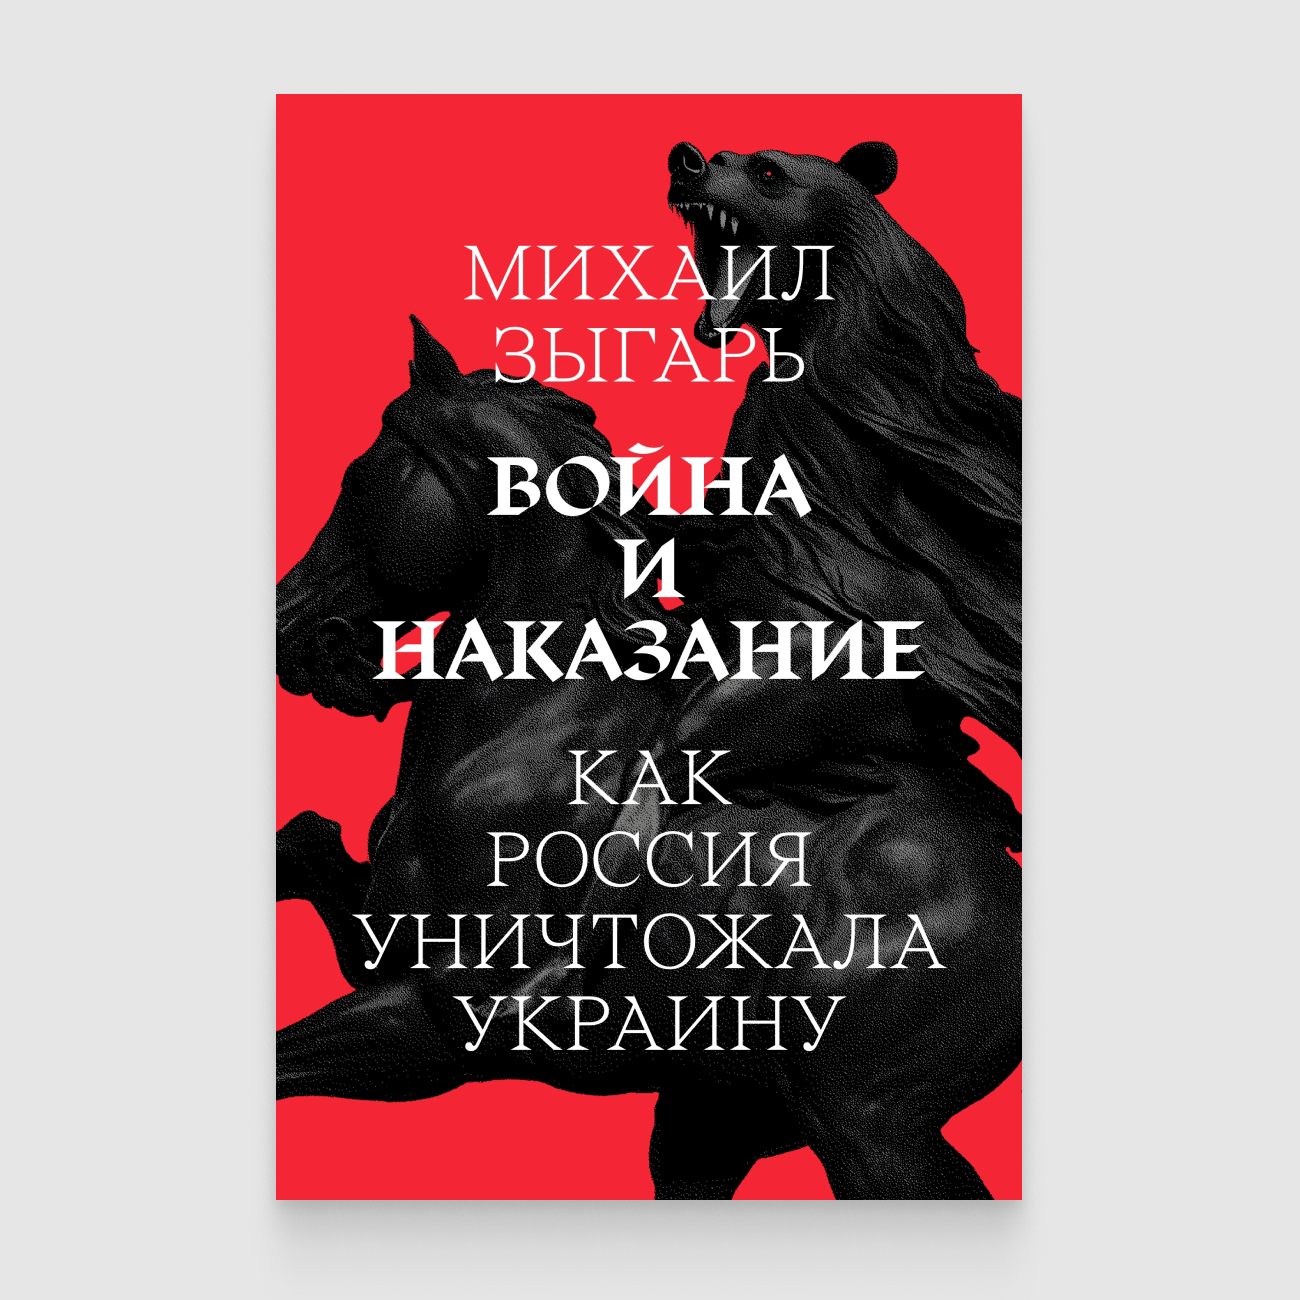 Михаил Зыгарь: Война и наказание (Paperback, русский language, Медуза)